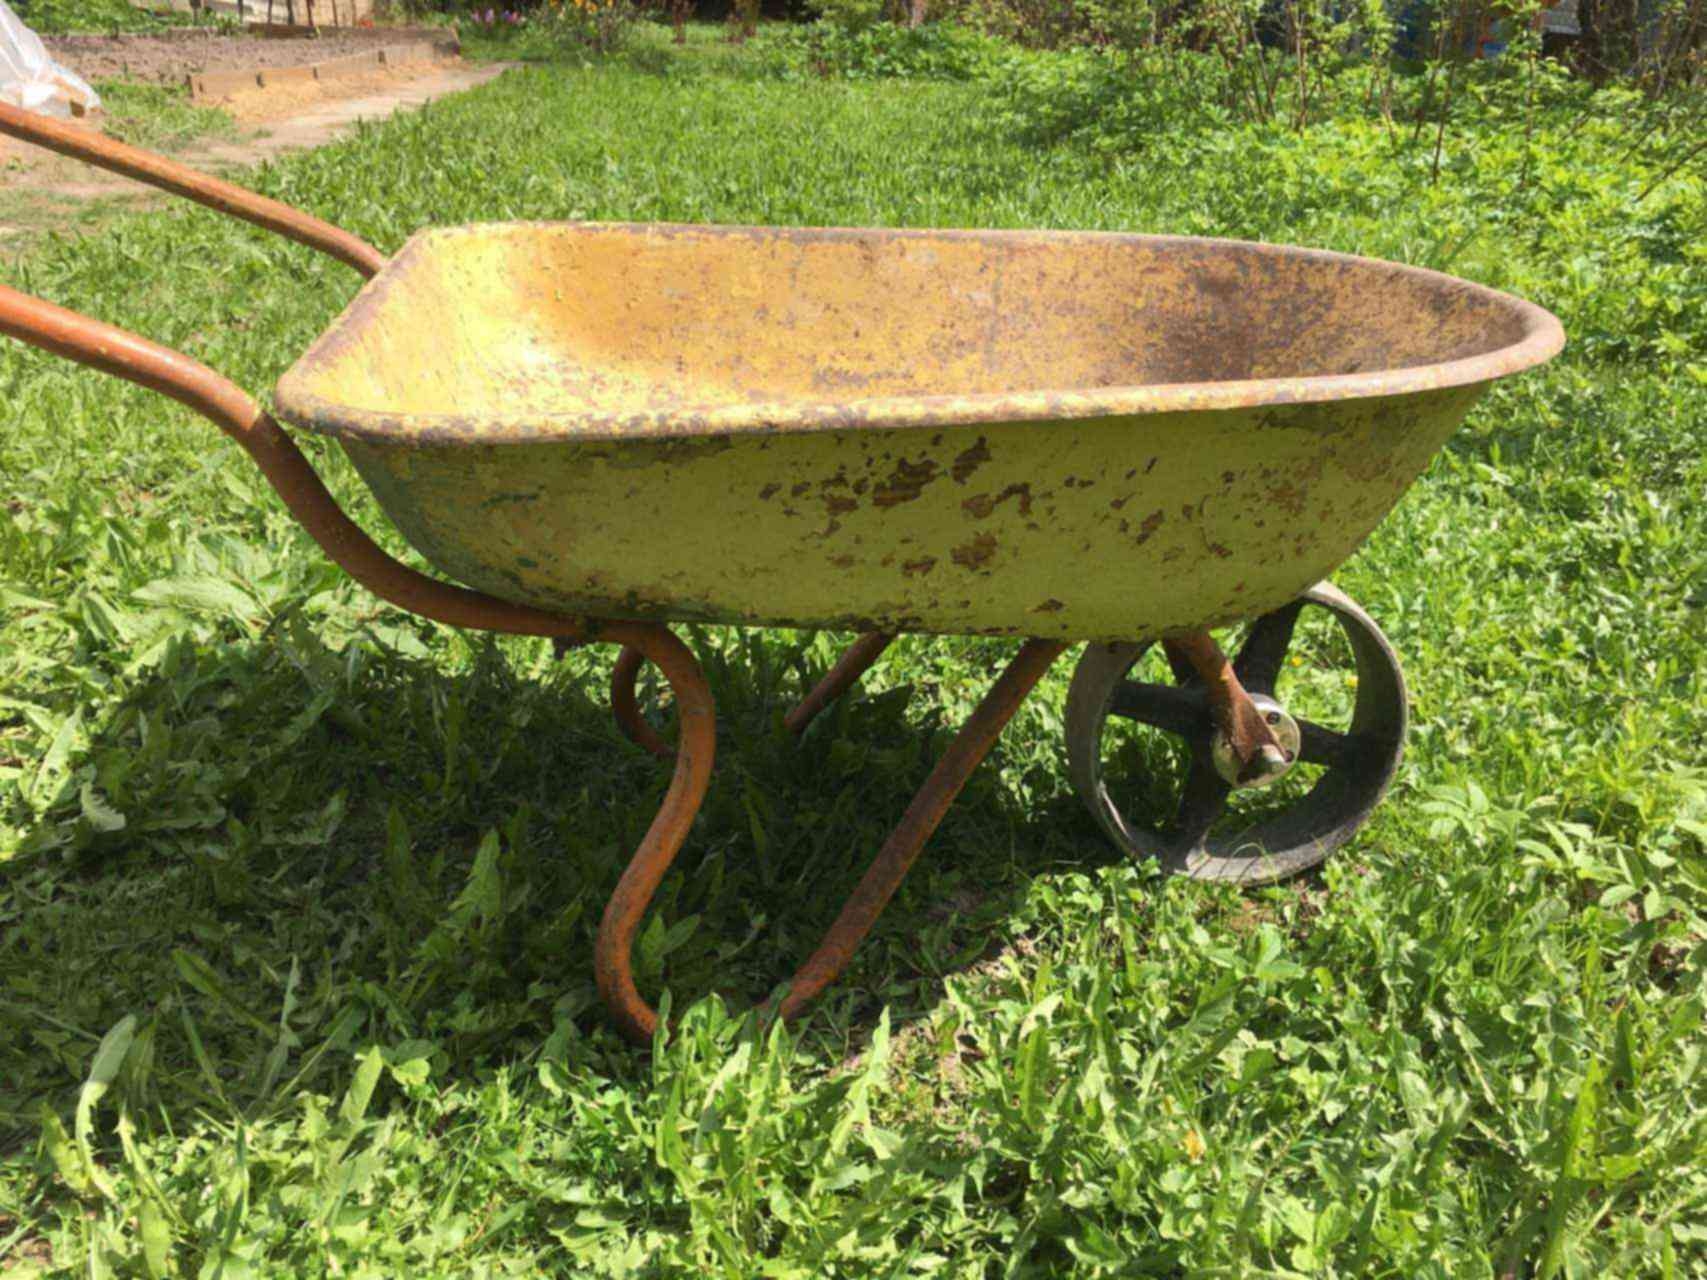 Первоуралец попытался украсть металл у ЕВРАЗа на садовой тележке